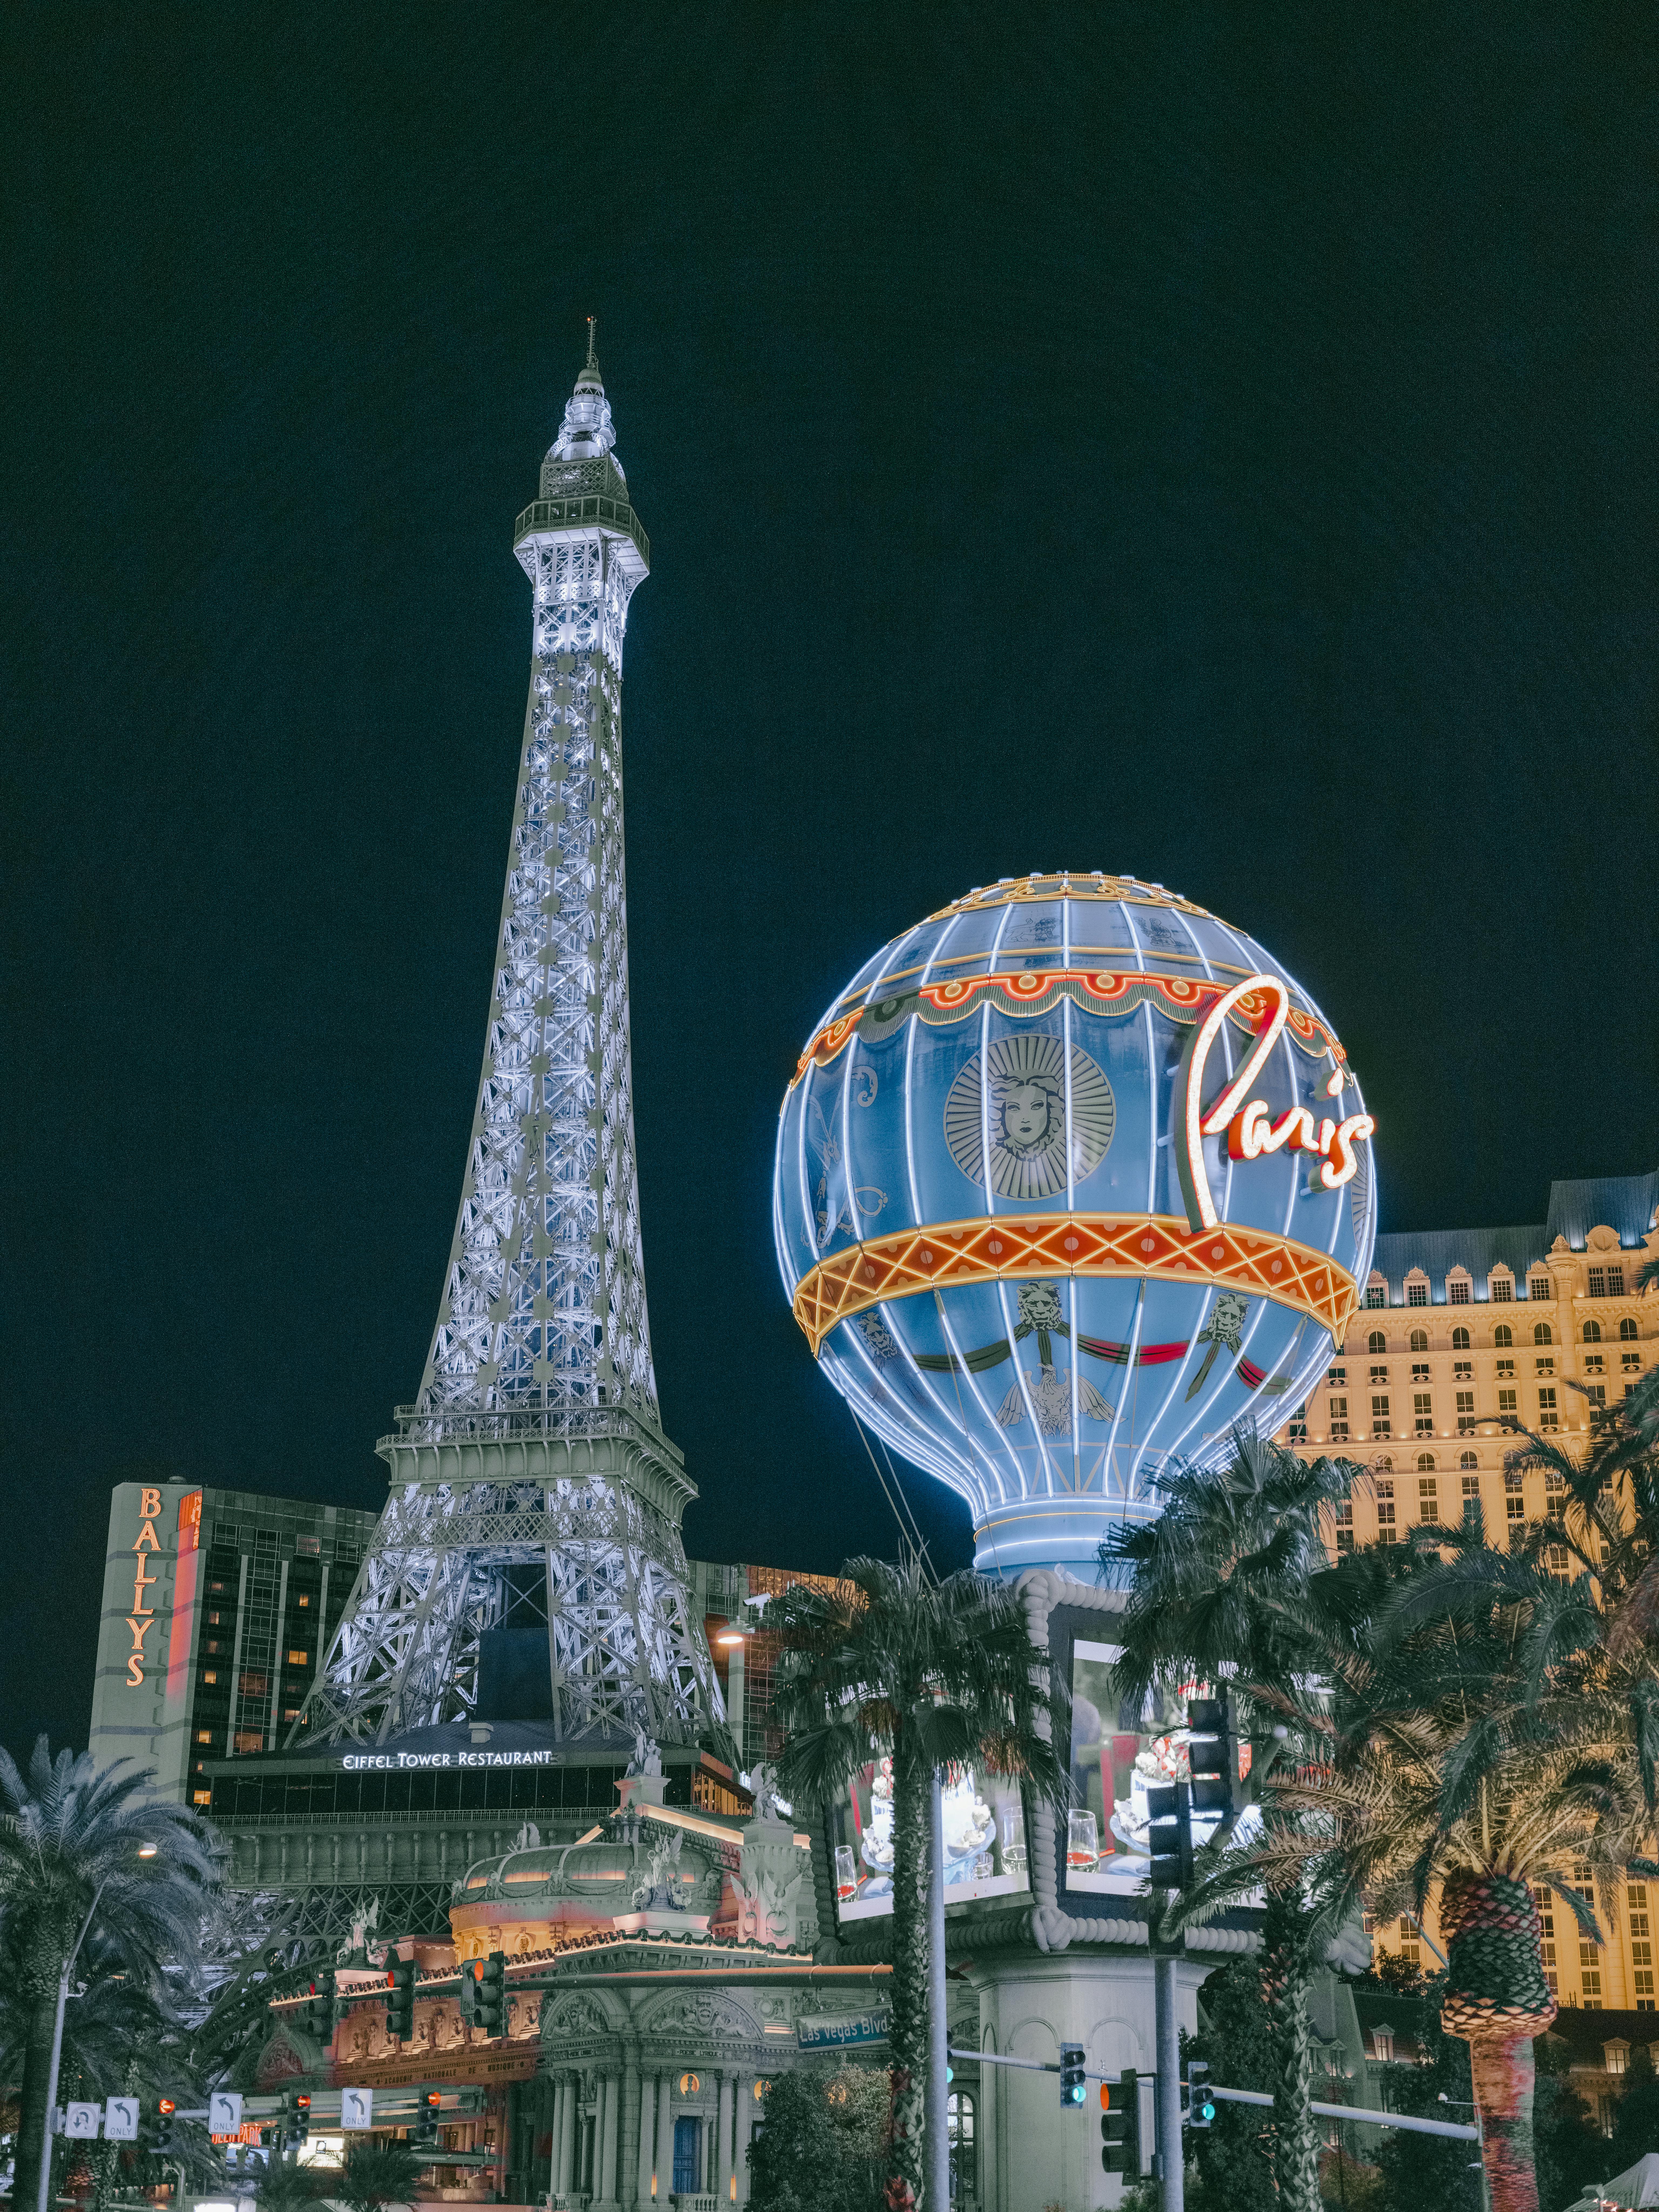 Paris Las Vegas Photo Gallery